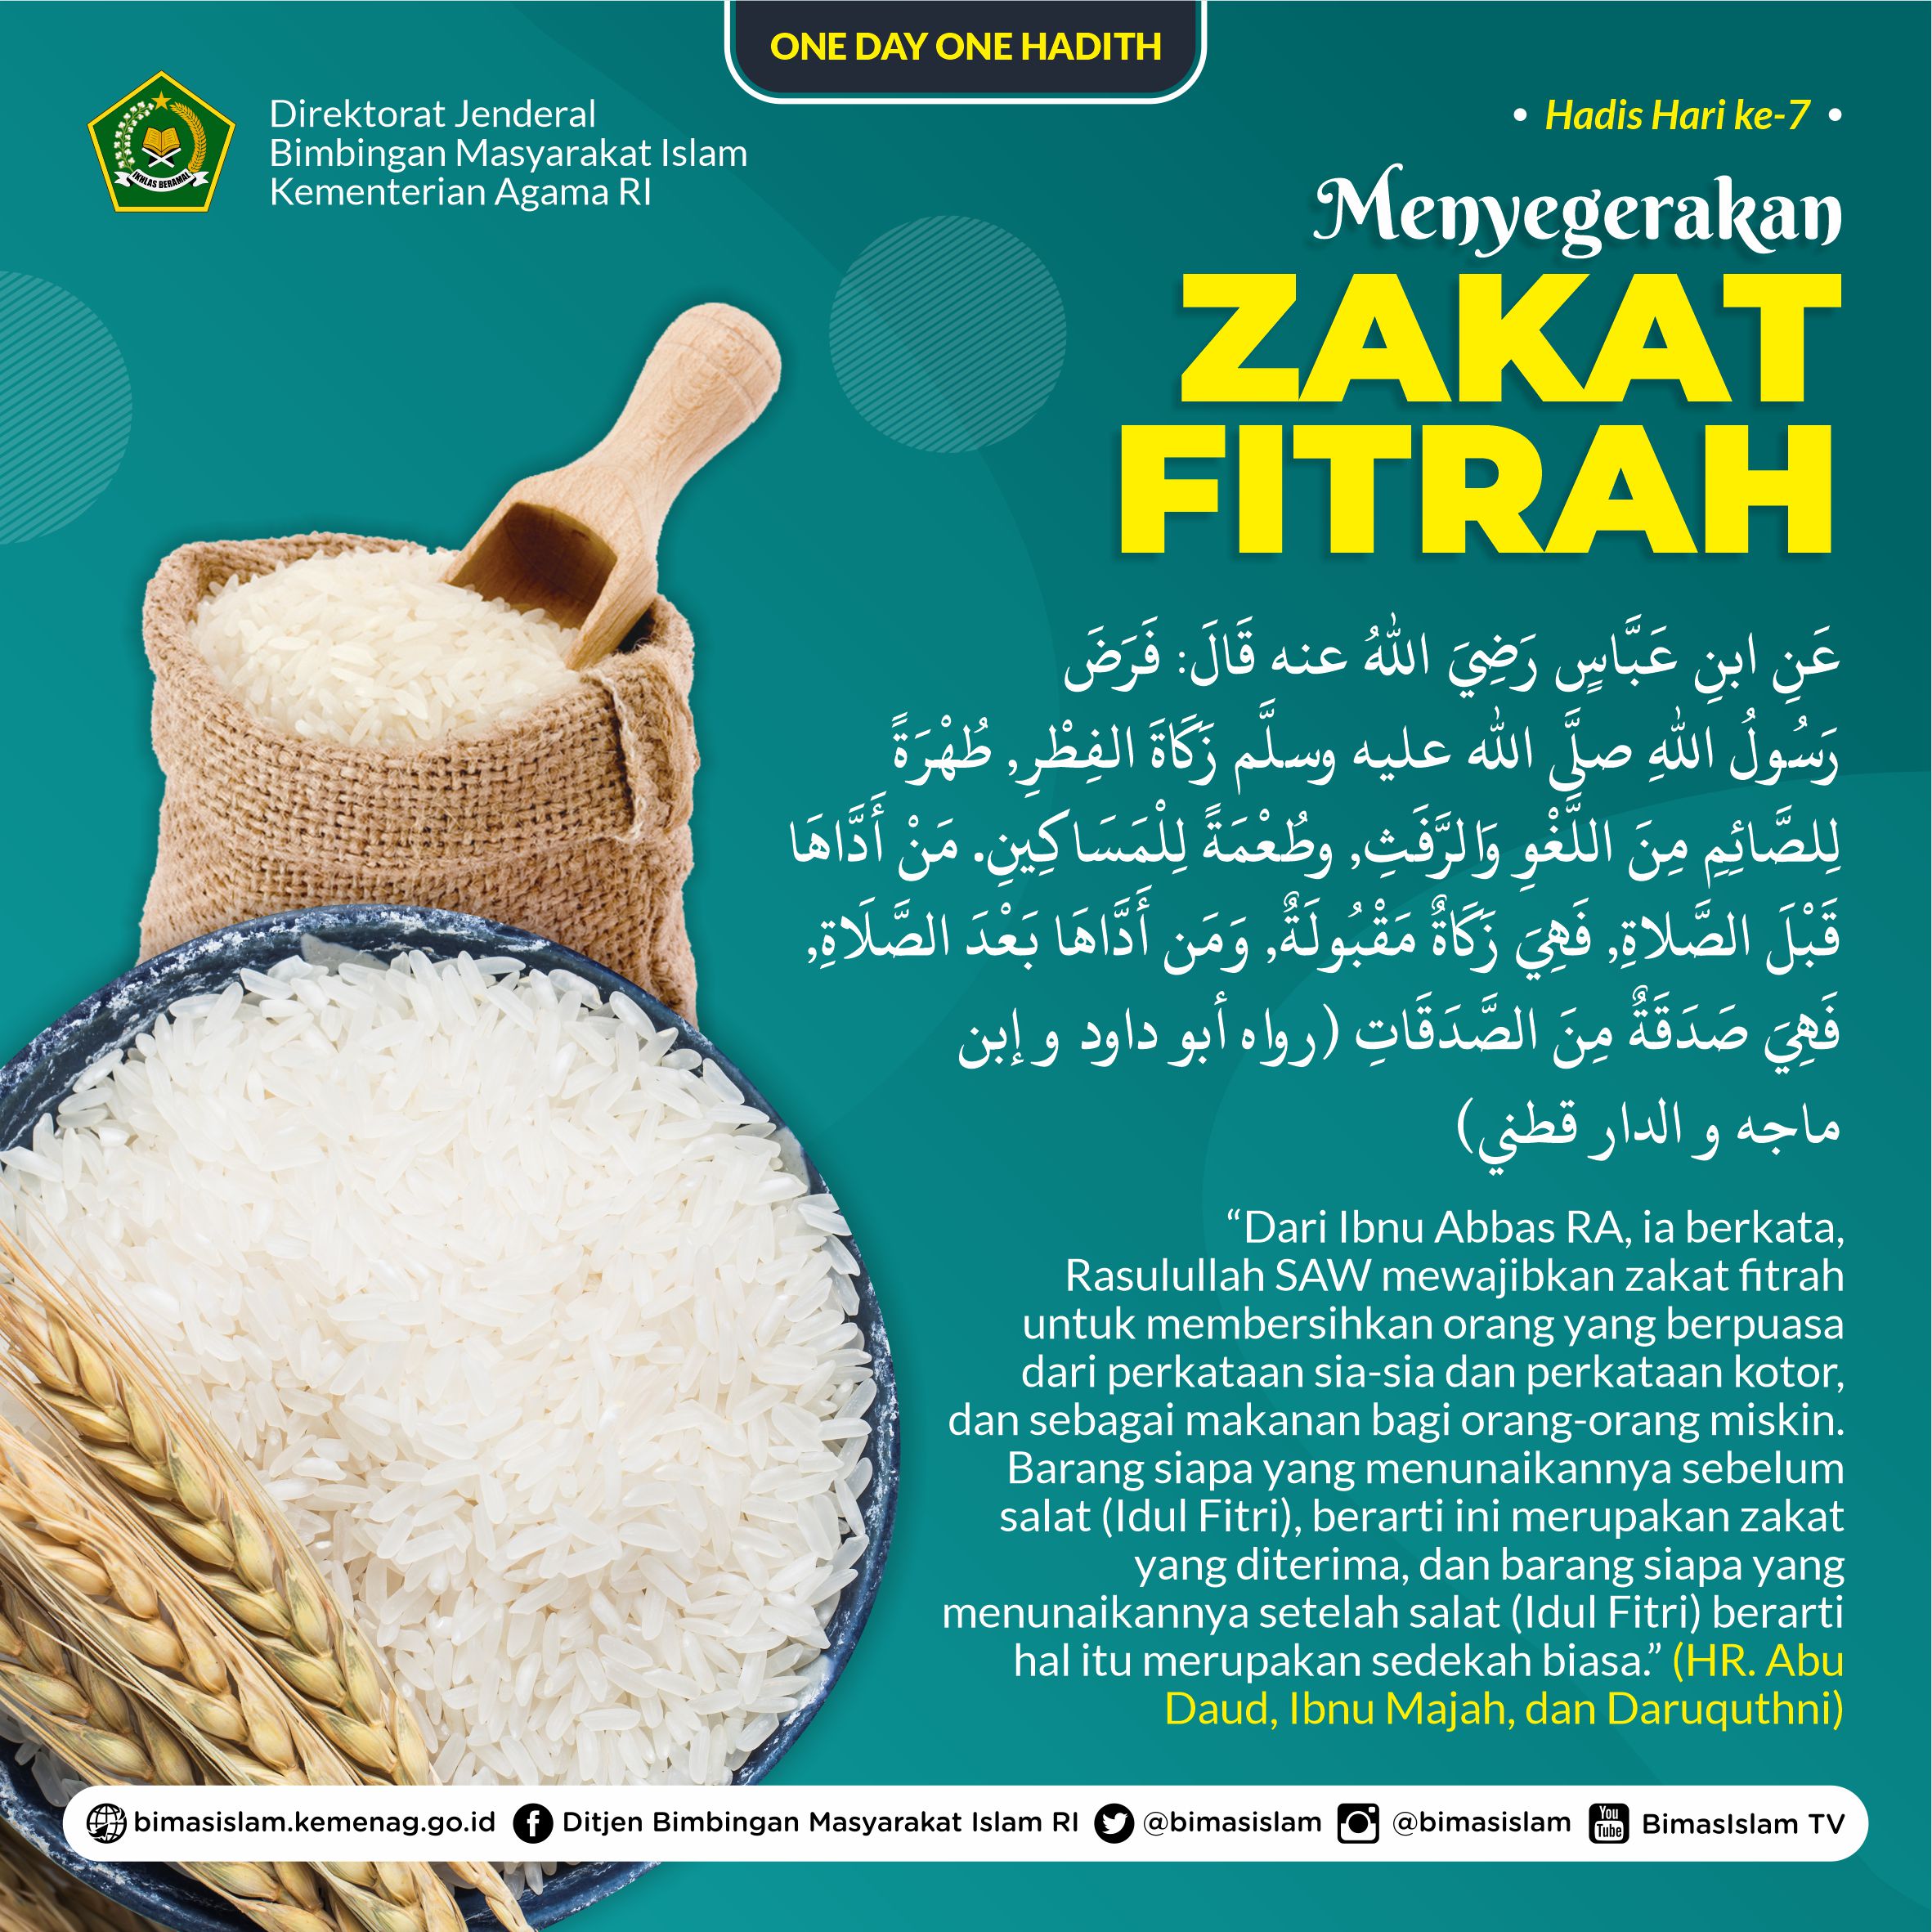 Nilai Zakat Fitrah Aceh Tengah dan Bener Meriah Berbeda